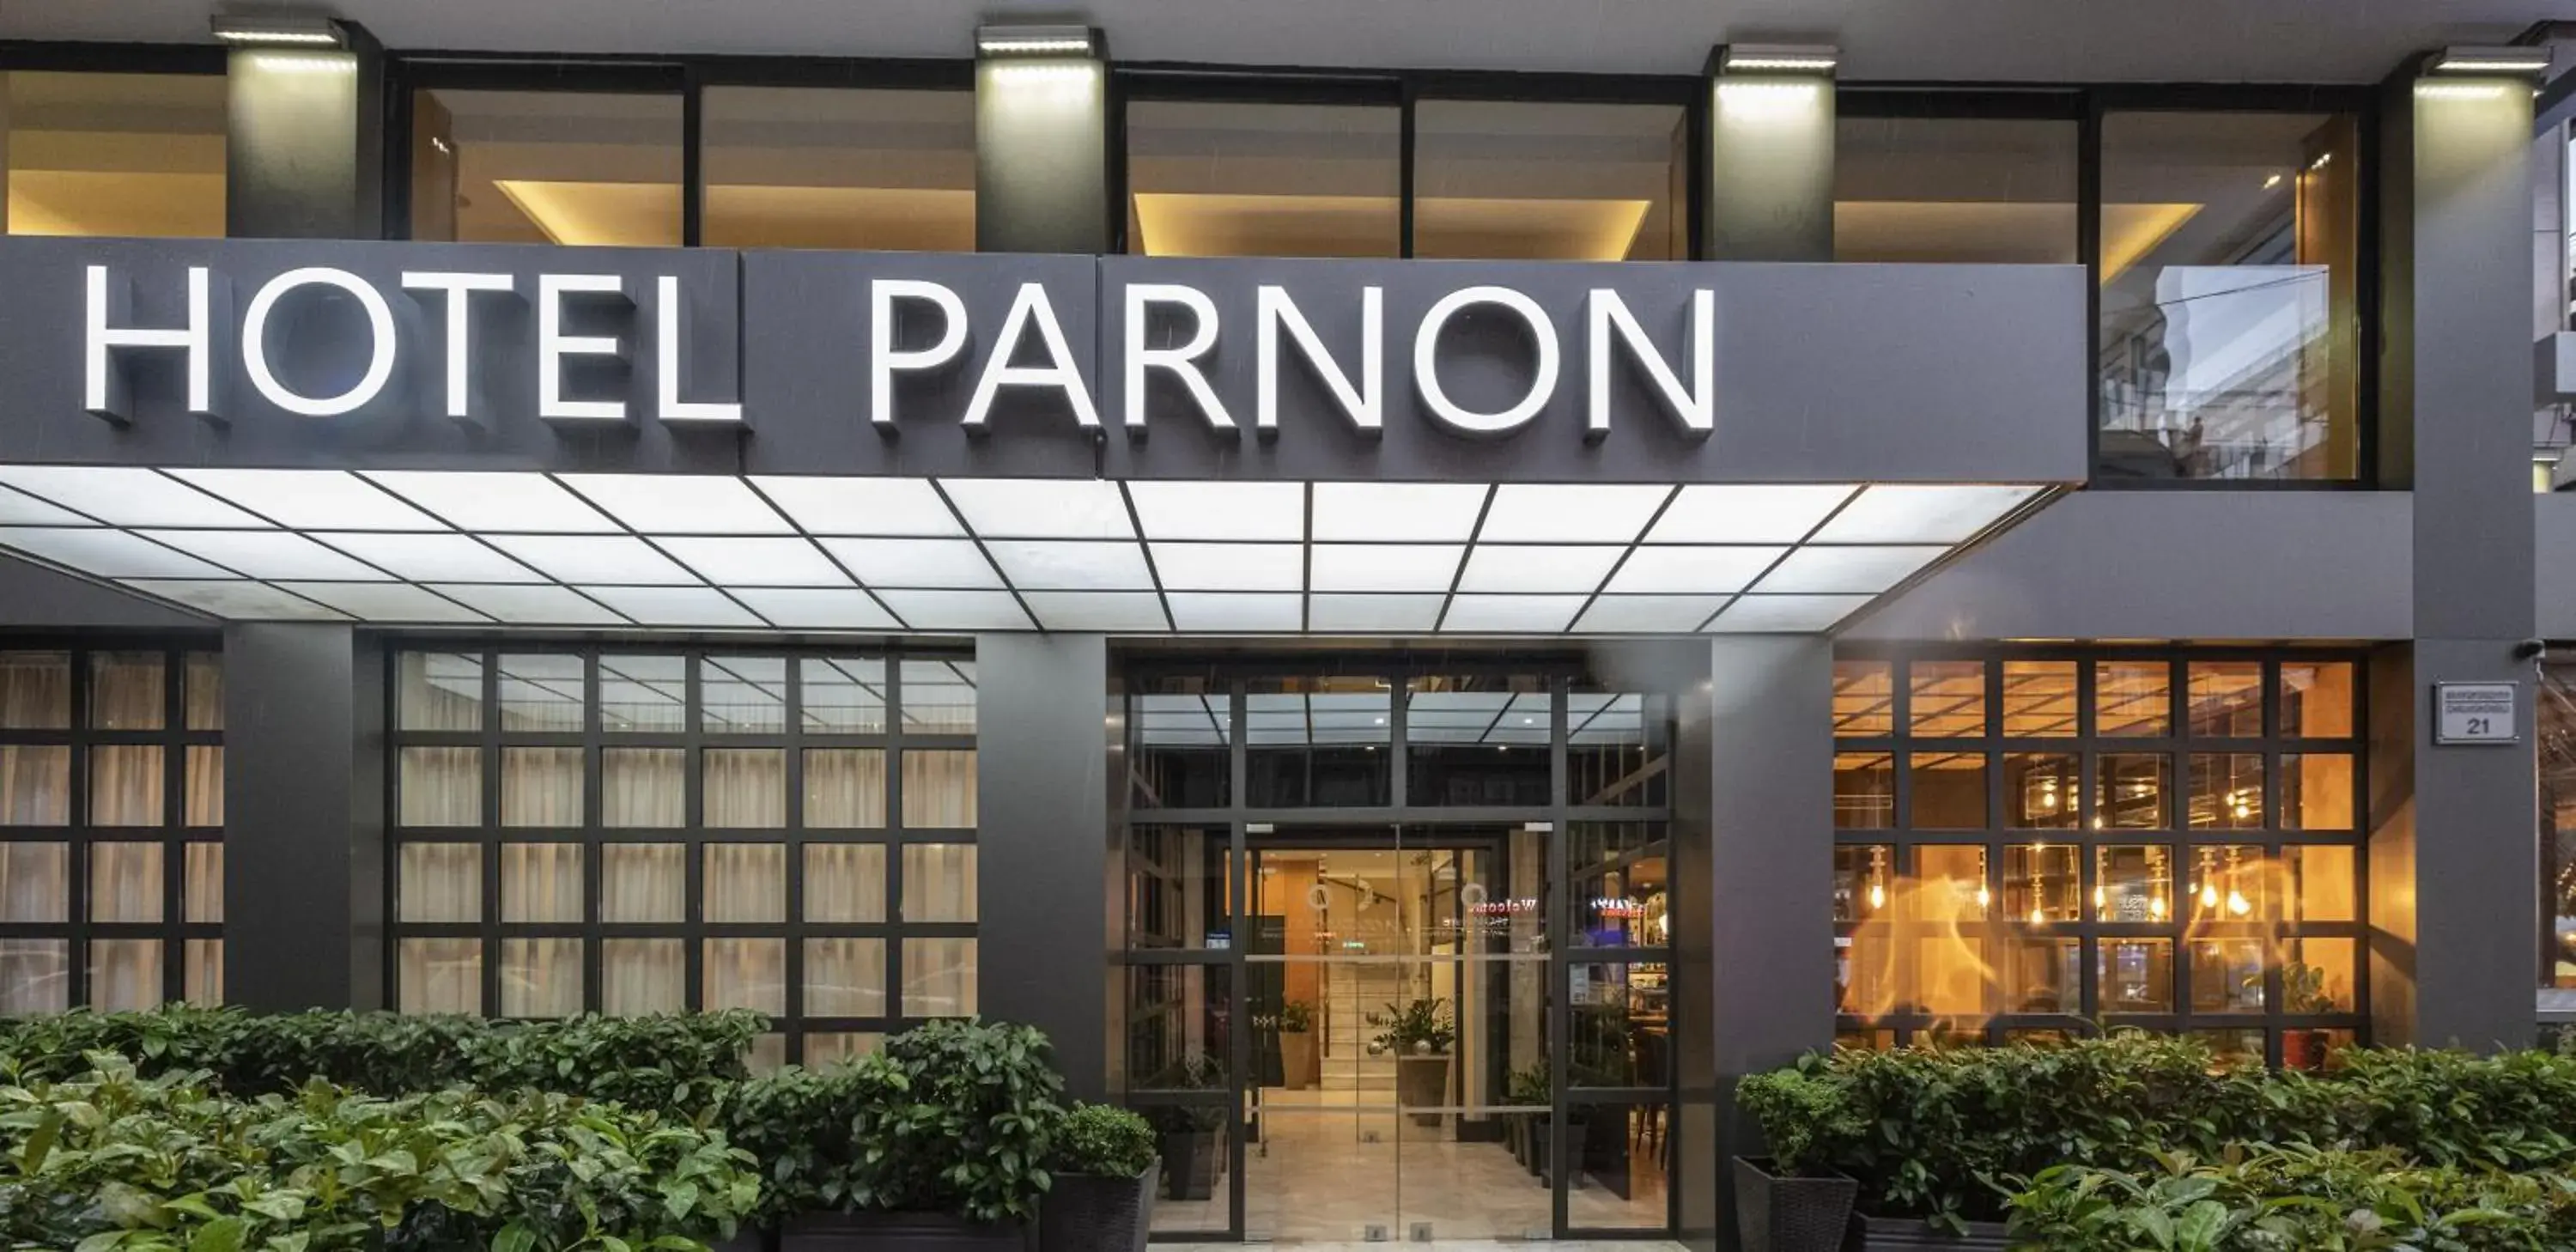 Facade/entrance in Parnon Hotel